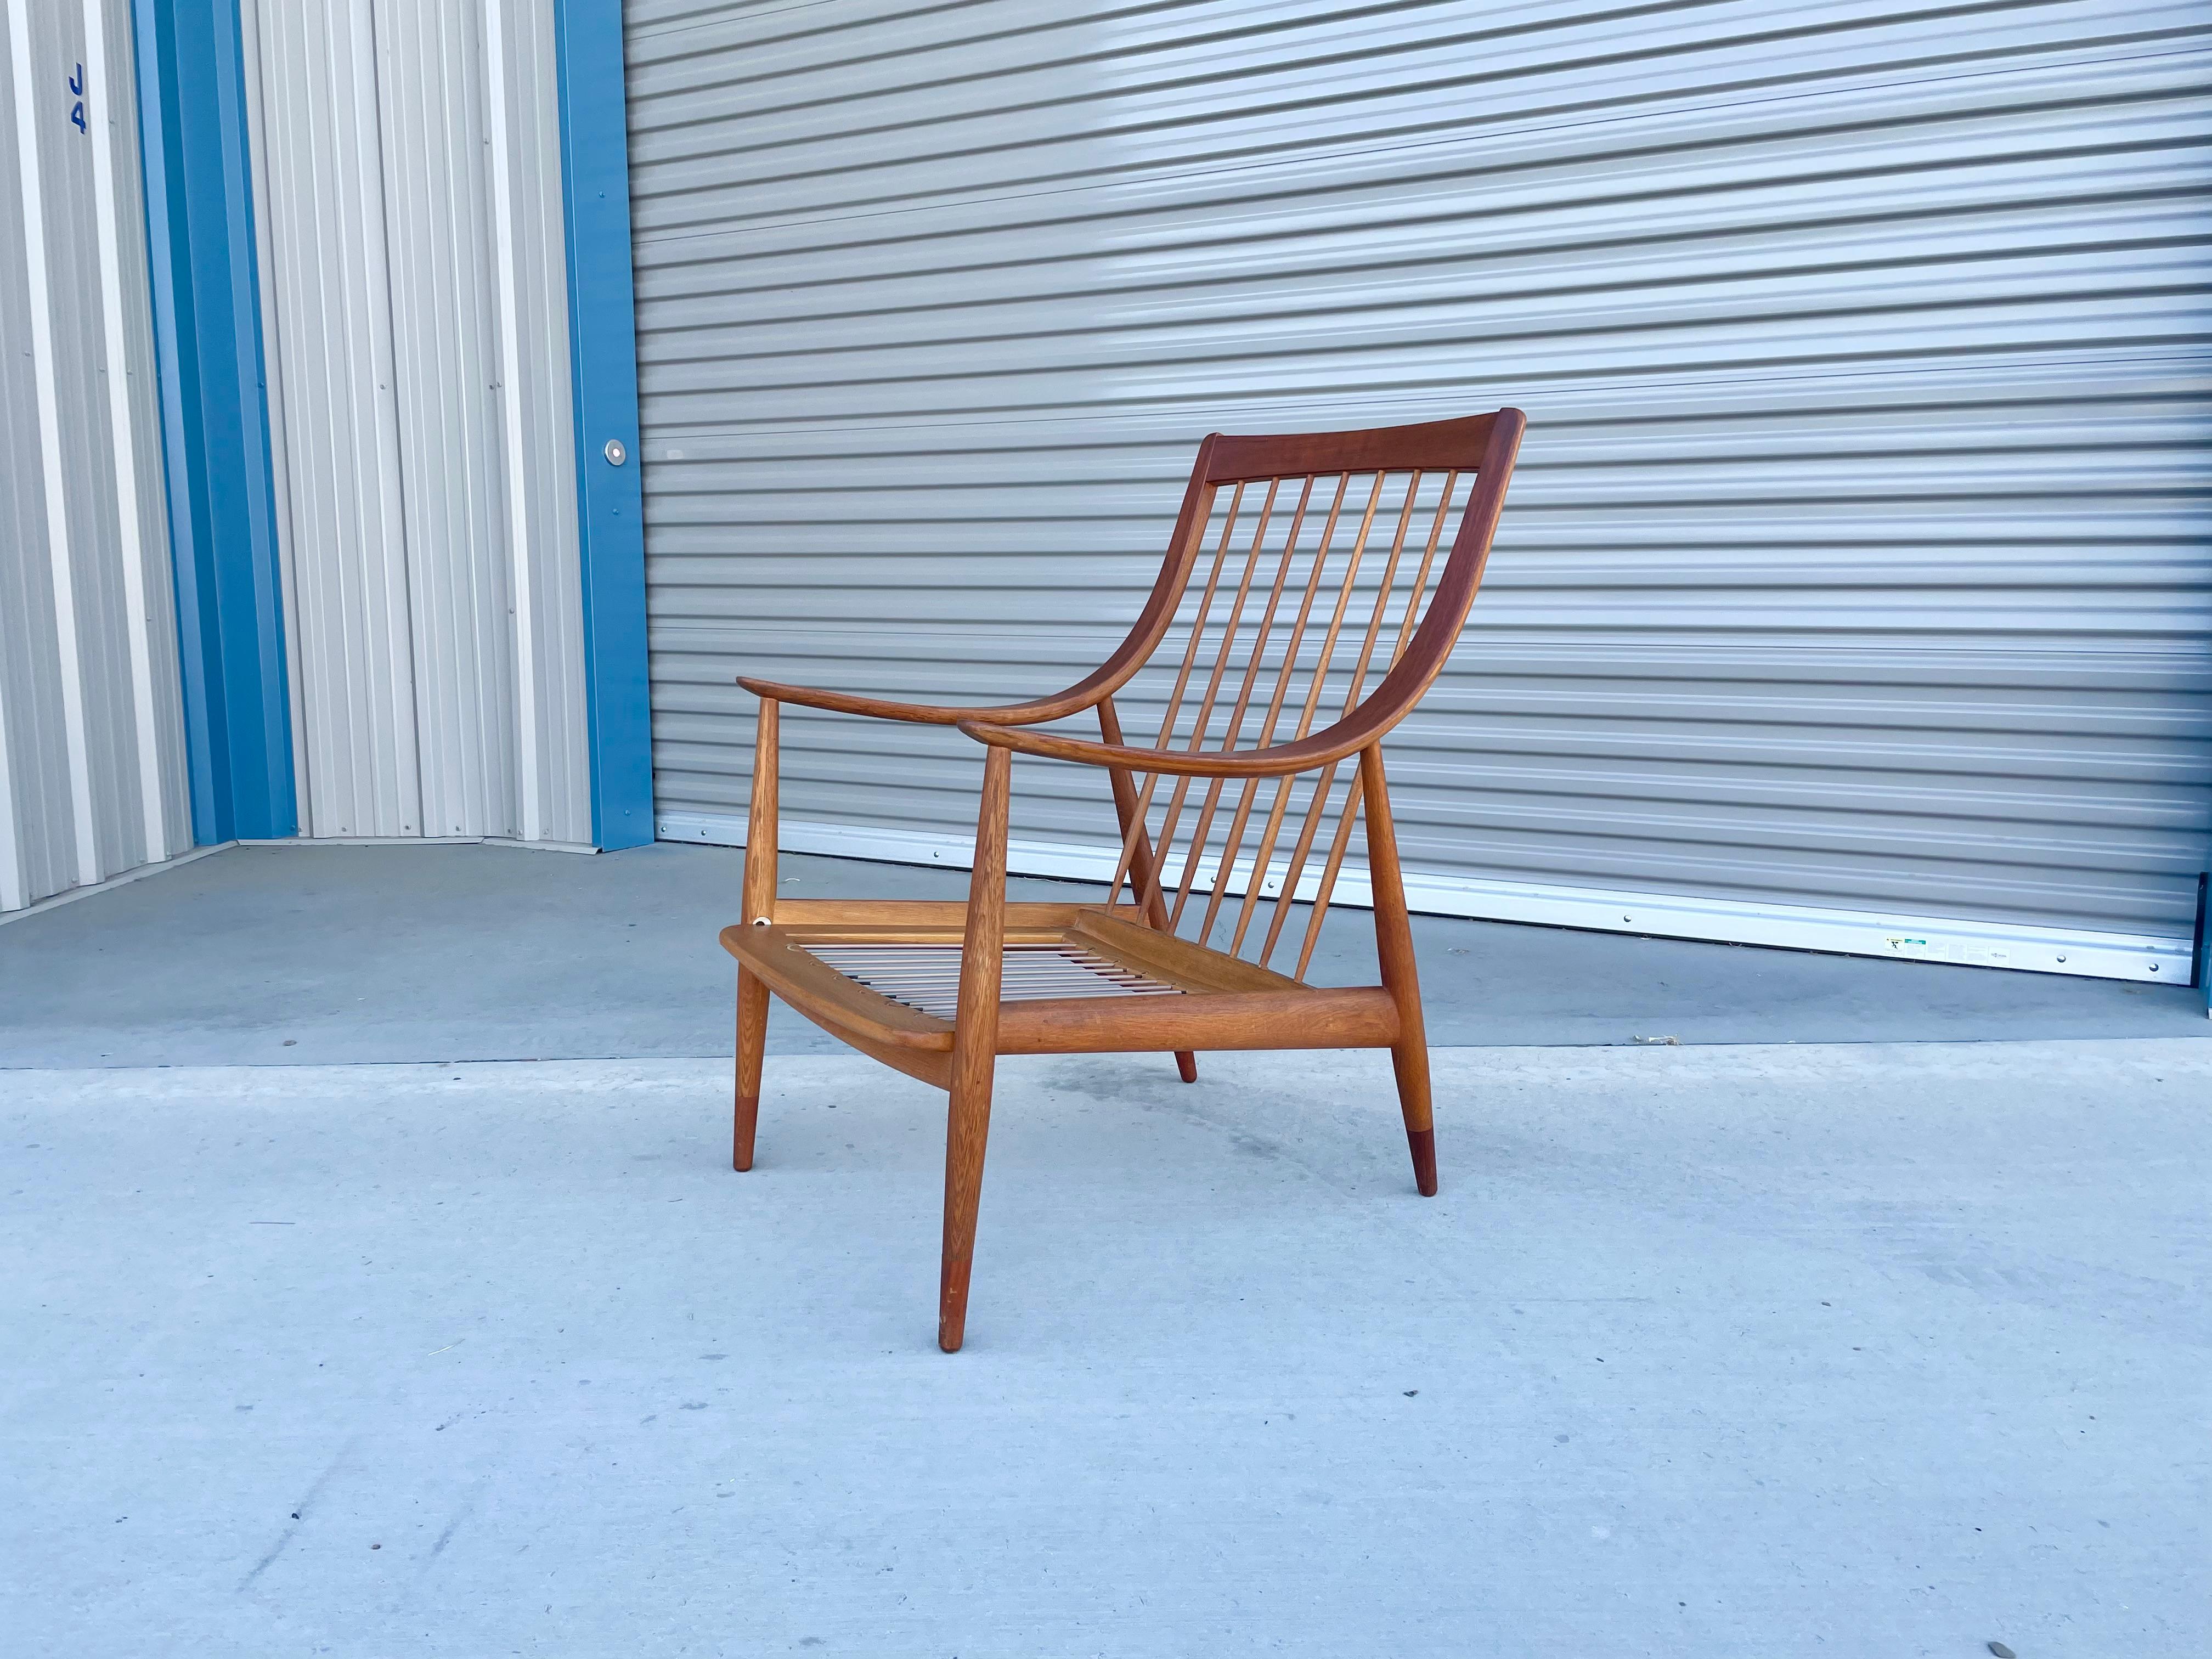 Magnifique fauteuil Peter Hvidt & Orla Mølgaard-Nielsen pour France & Daverkosen fabriqué au Danemark, vers les années 1950. Cette superbe chaise a été conçue avec du teck de la plus haute qualité. Le fauteuil présente des accoudoirs curvilignes en